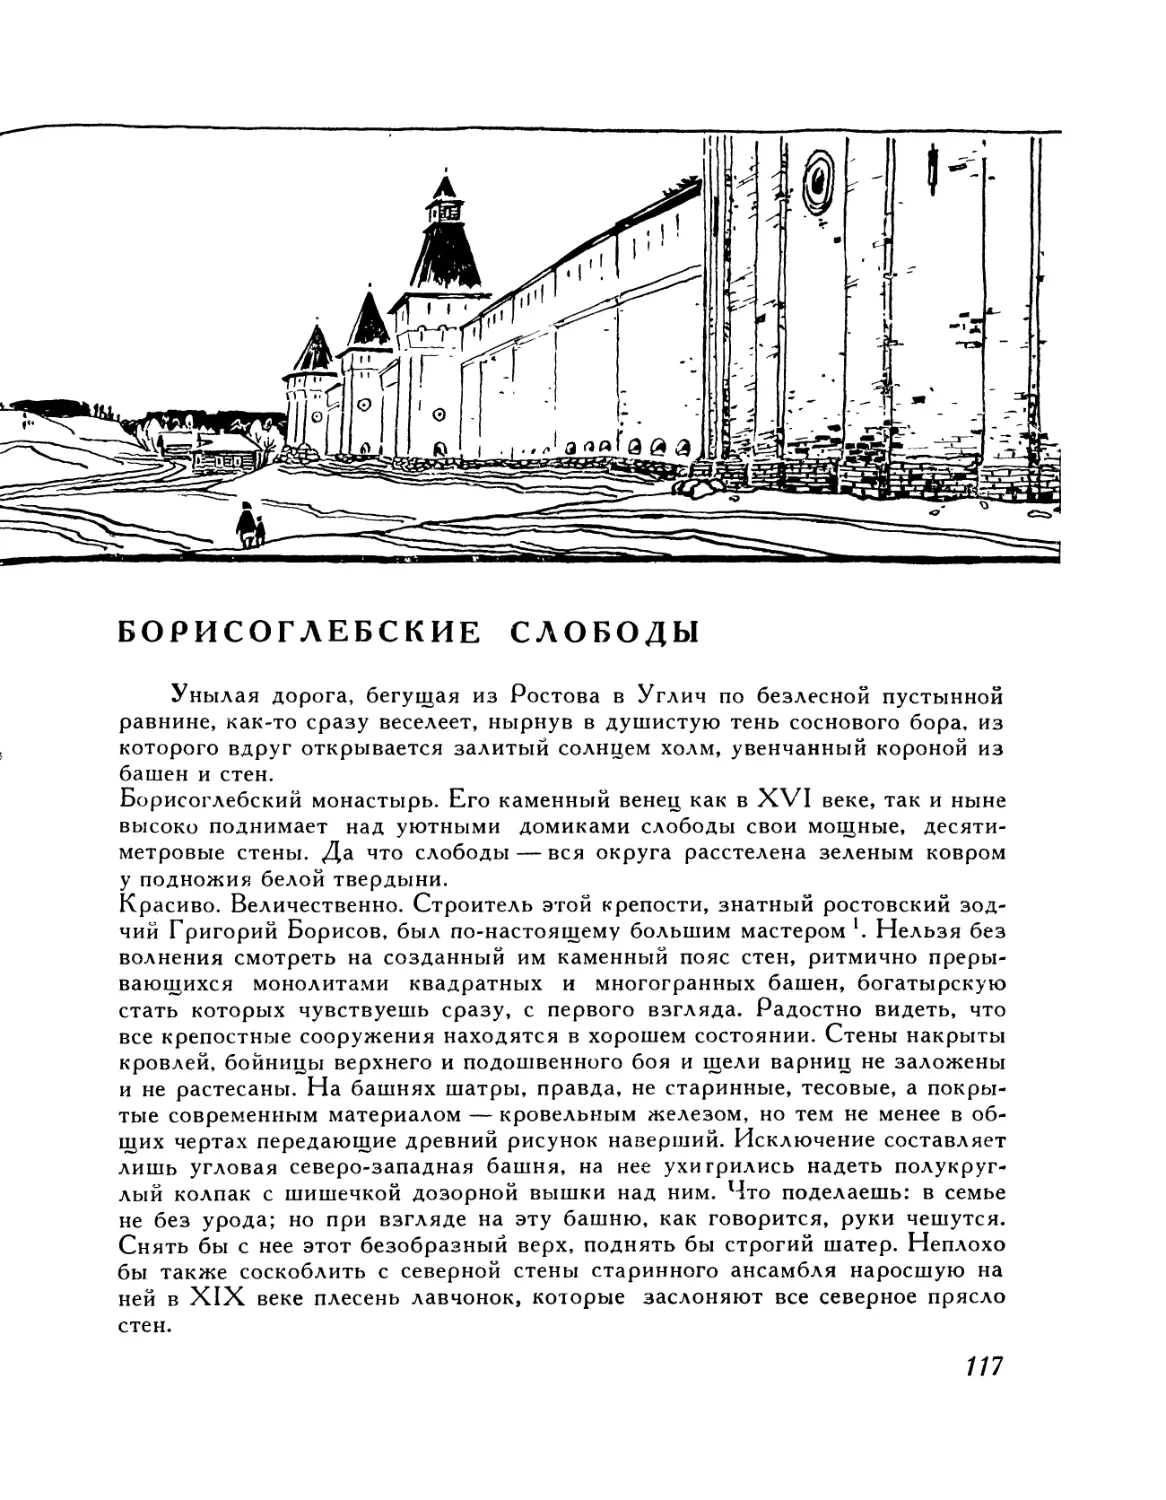 Борисоглебские слободы